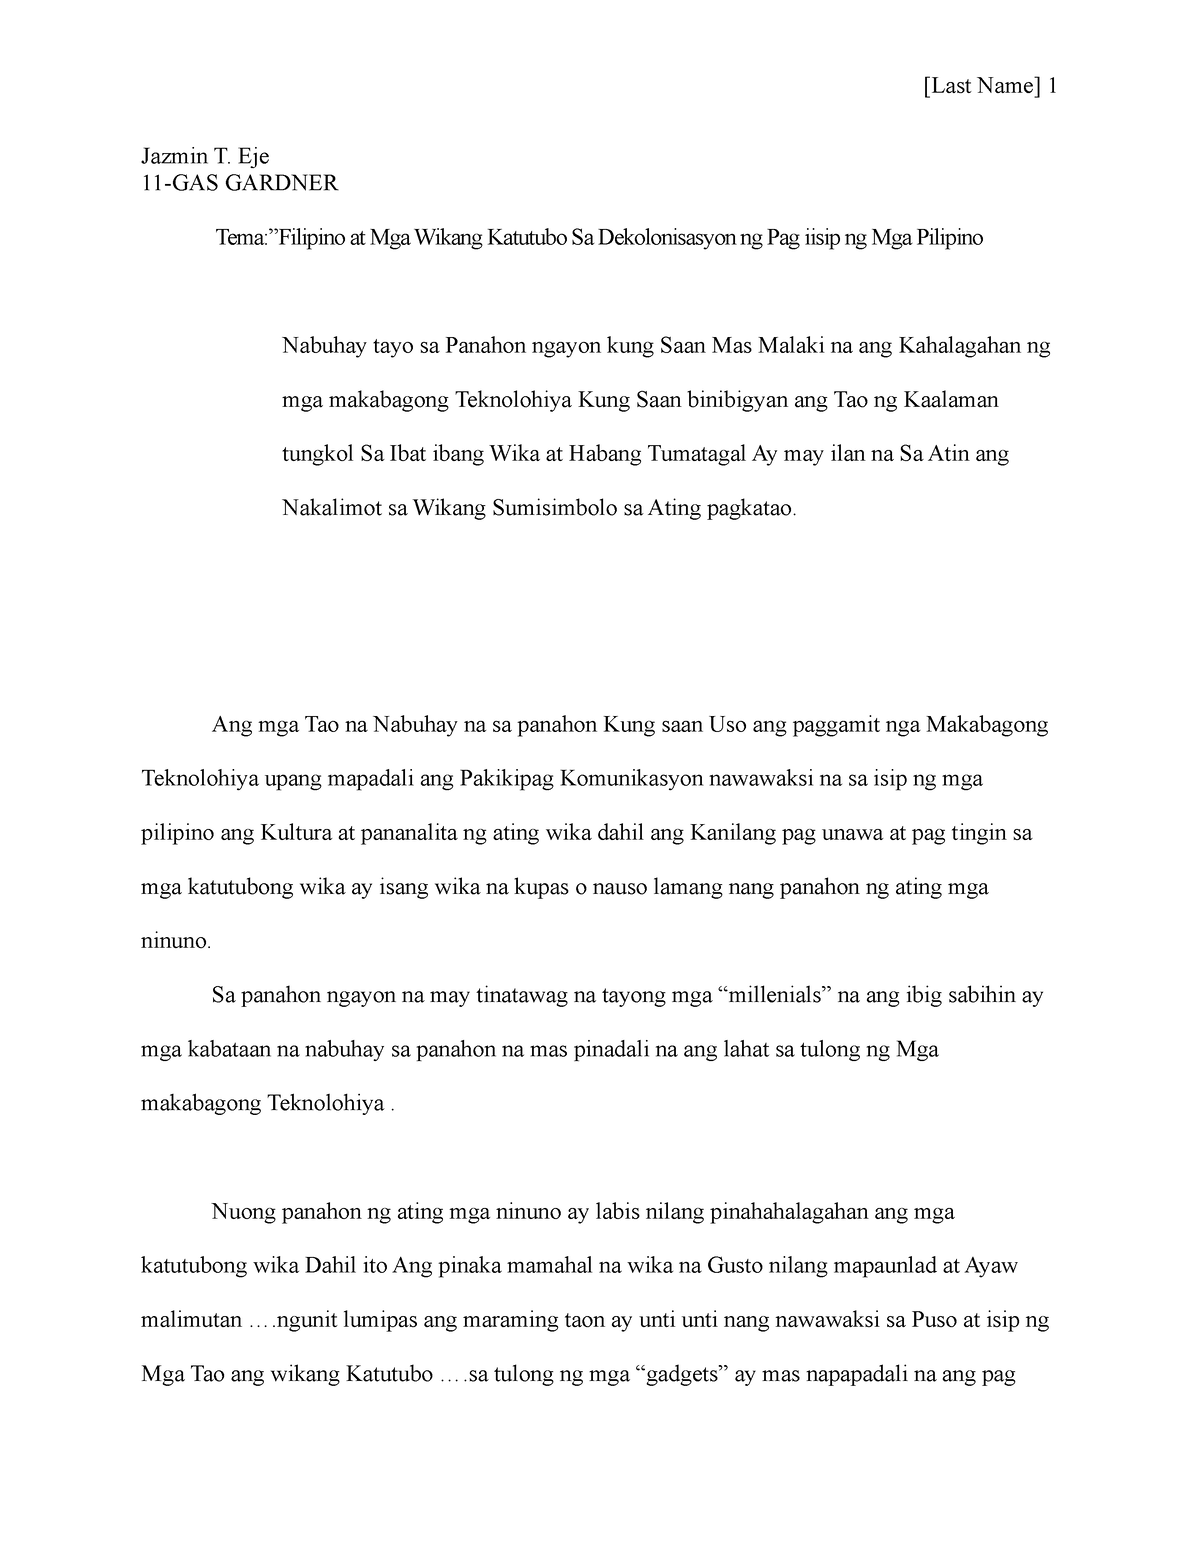 Essay Writing Buwan Ng Wika Last Name 1 Jazmin T Eje 11 Gas Gardner Tema”filipino At Mga 8340